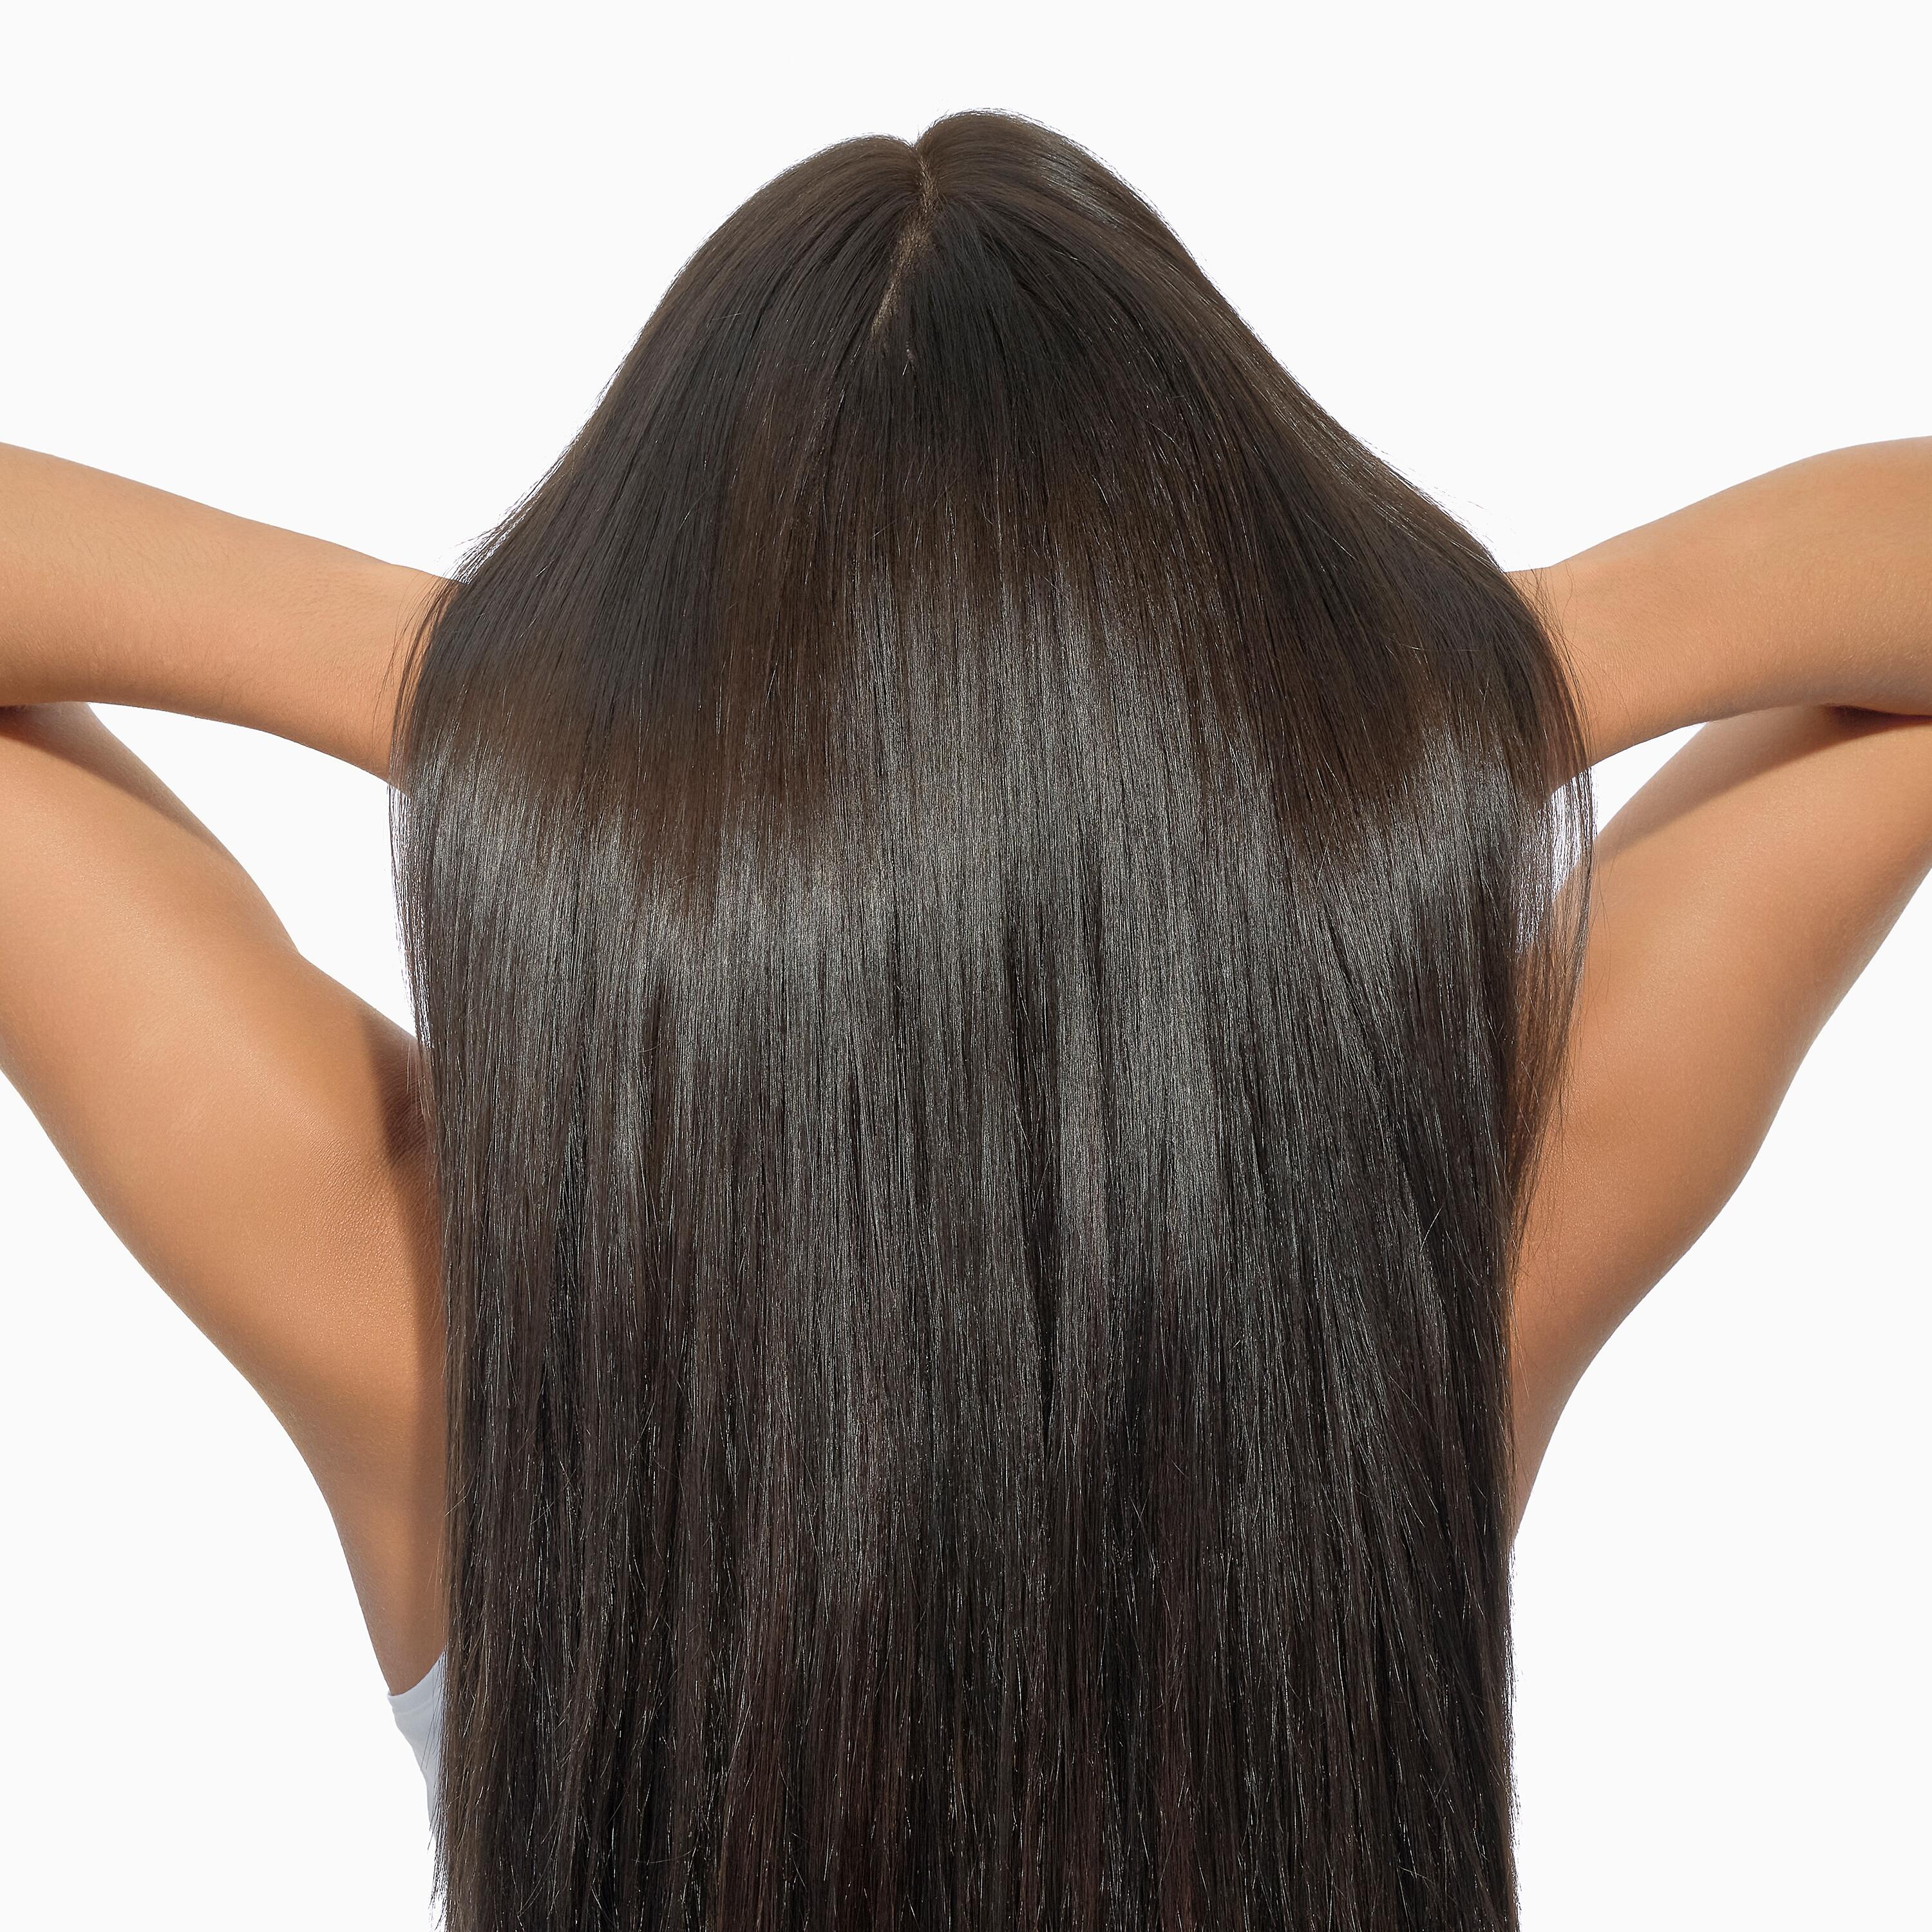 Reidrata i capelli nel cuore della fibra e restituisci loro la naturale lucentezza